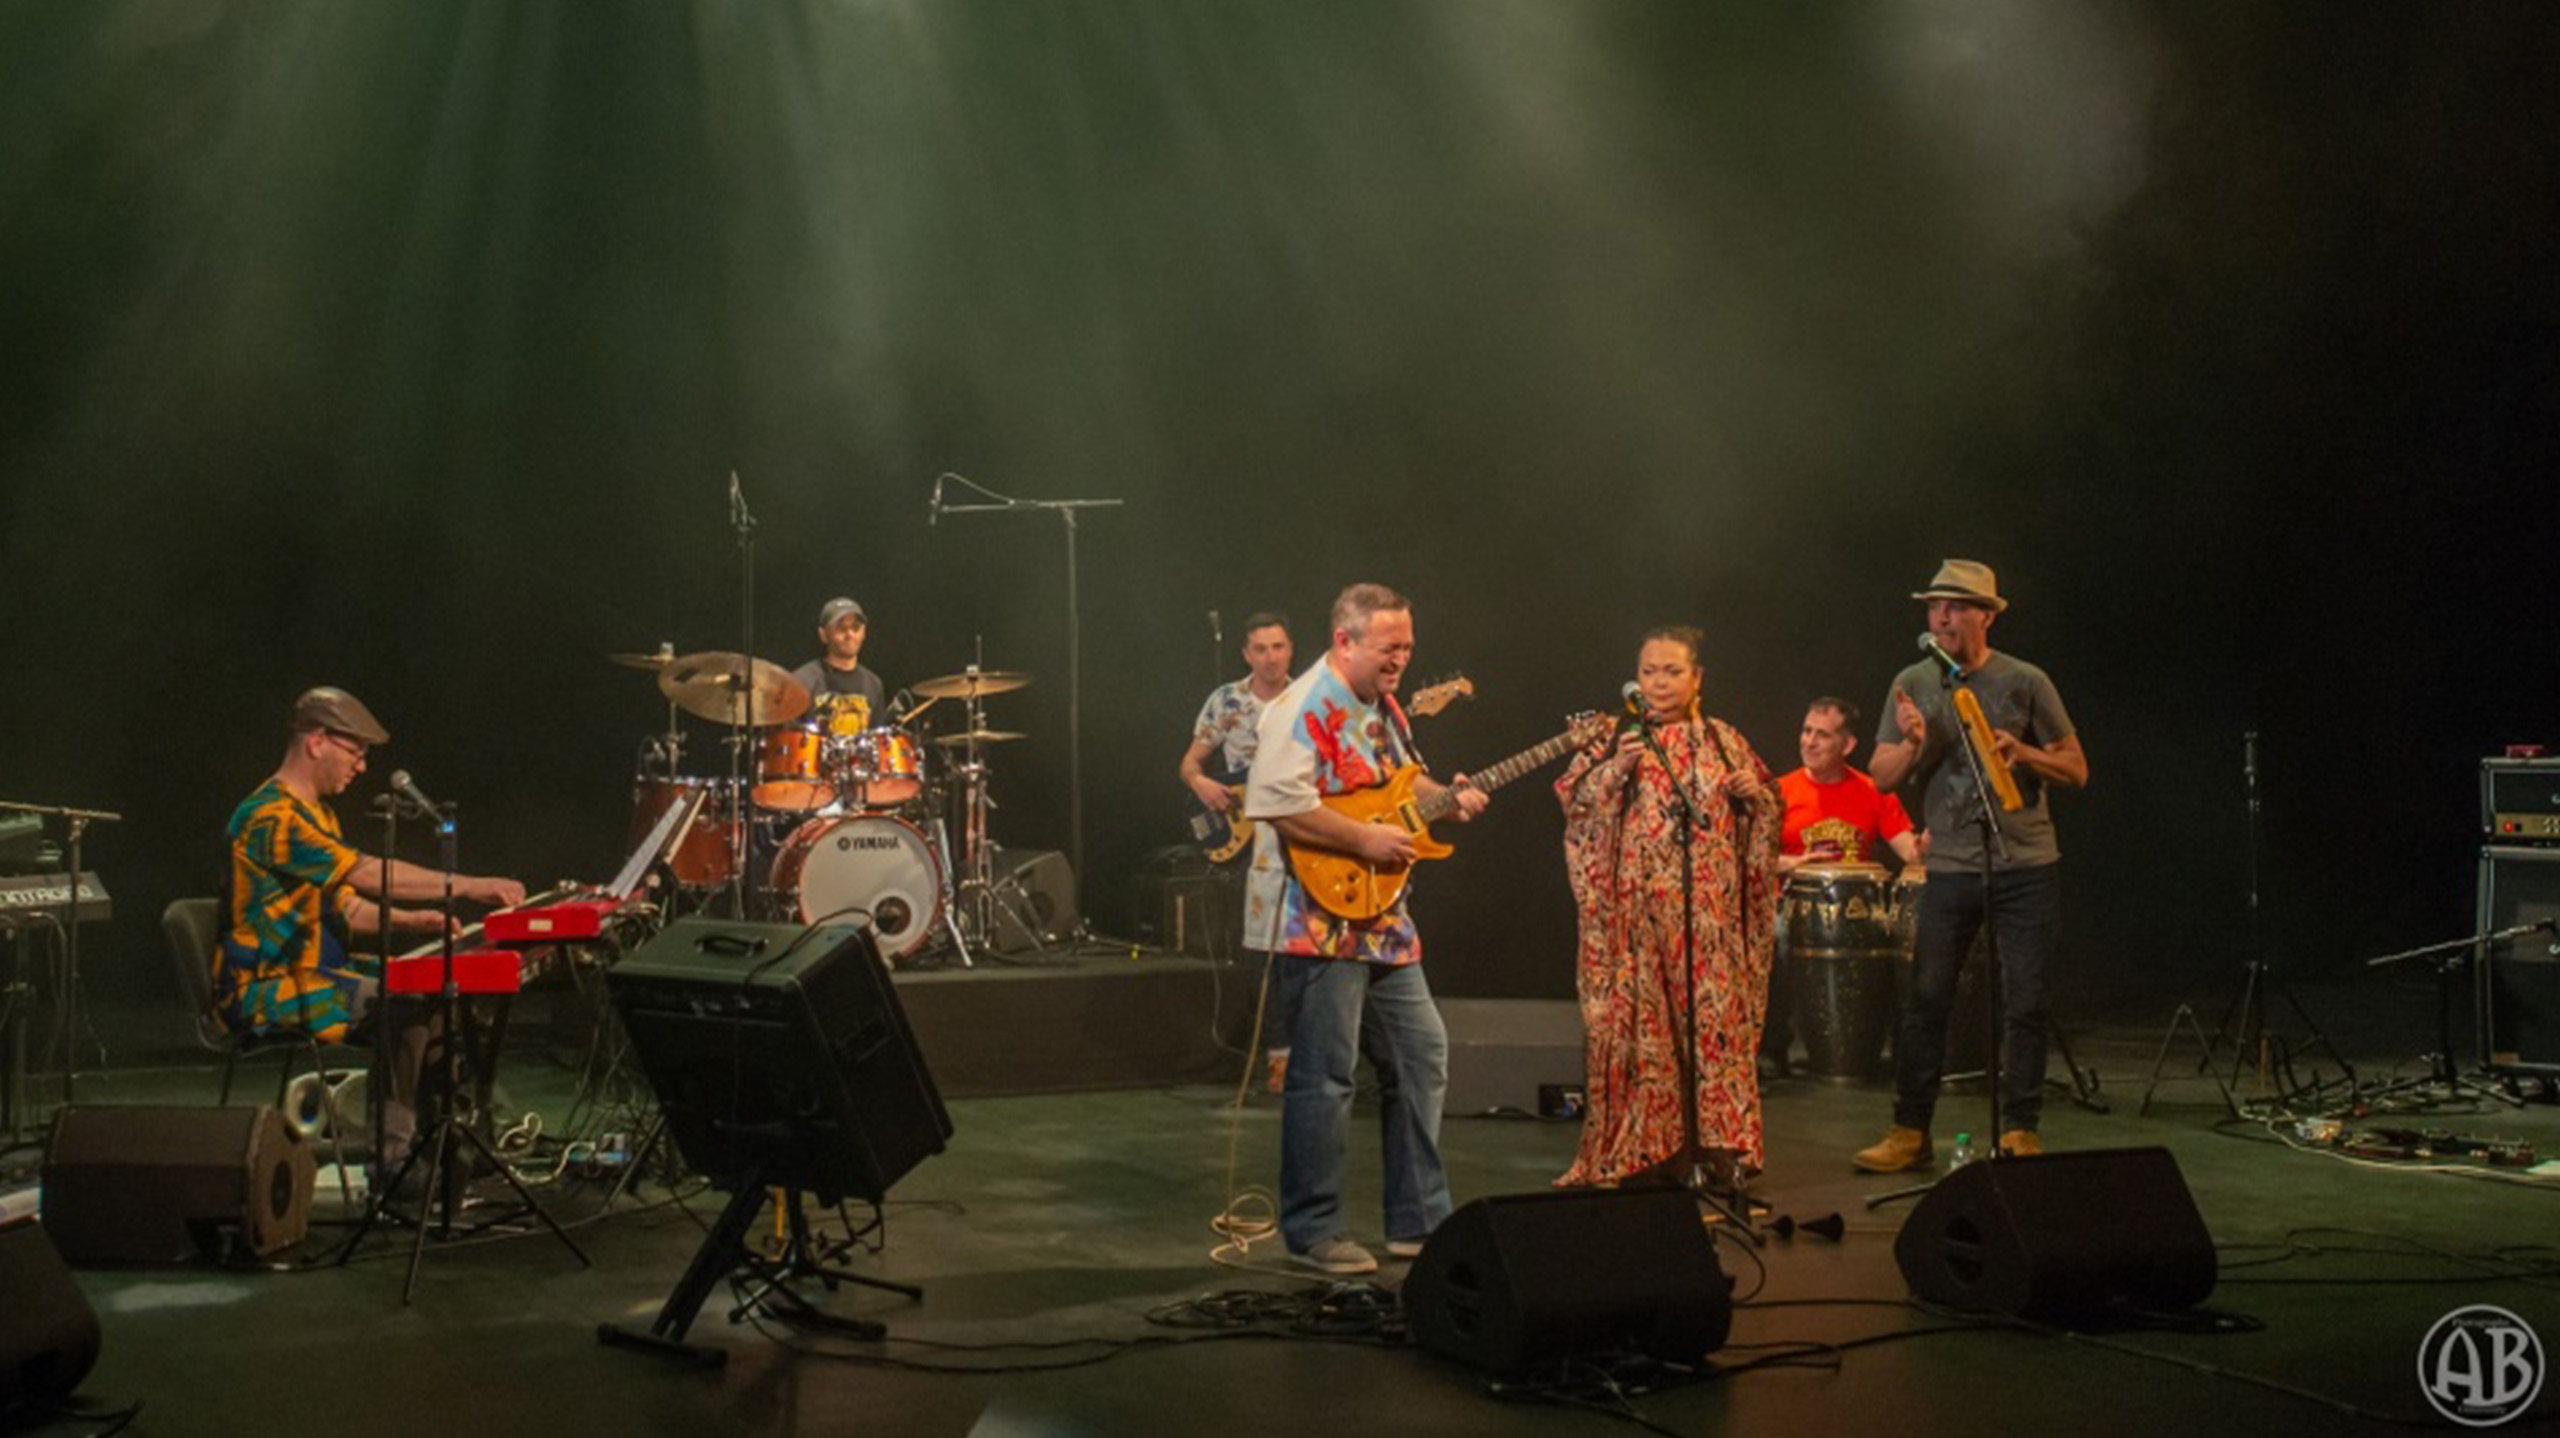 Concert Jugando tribute santana live